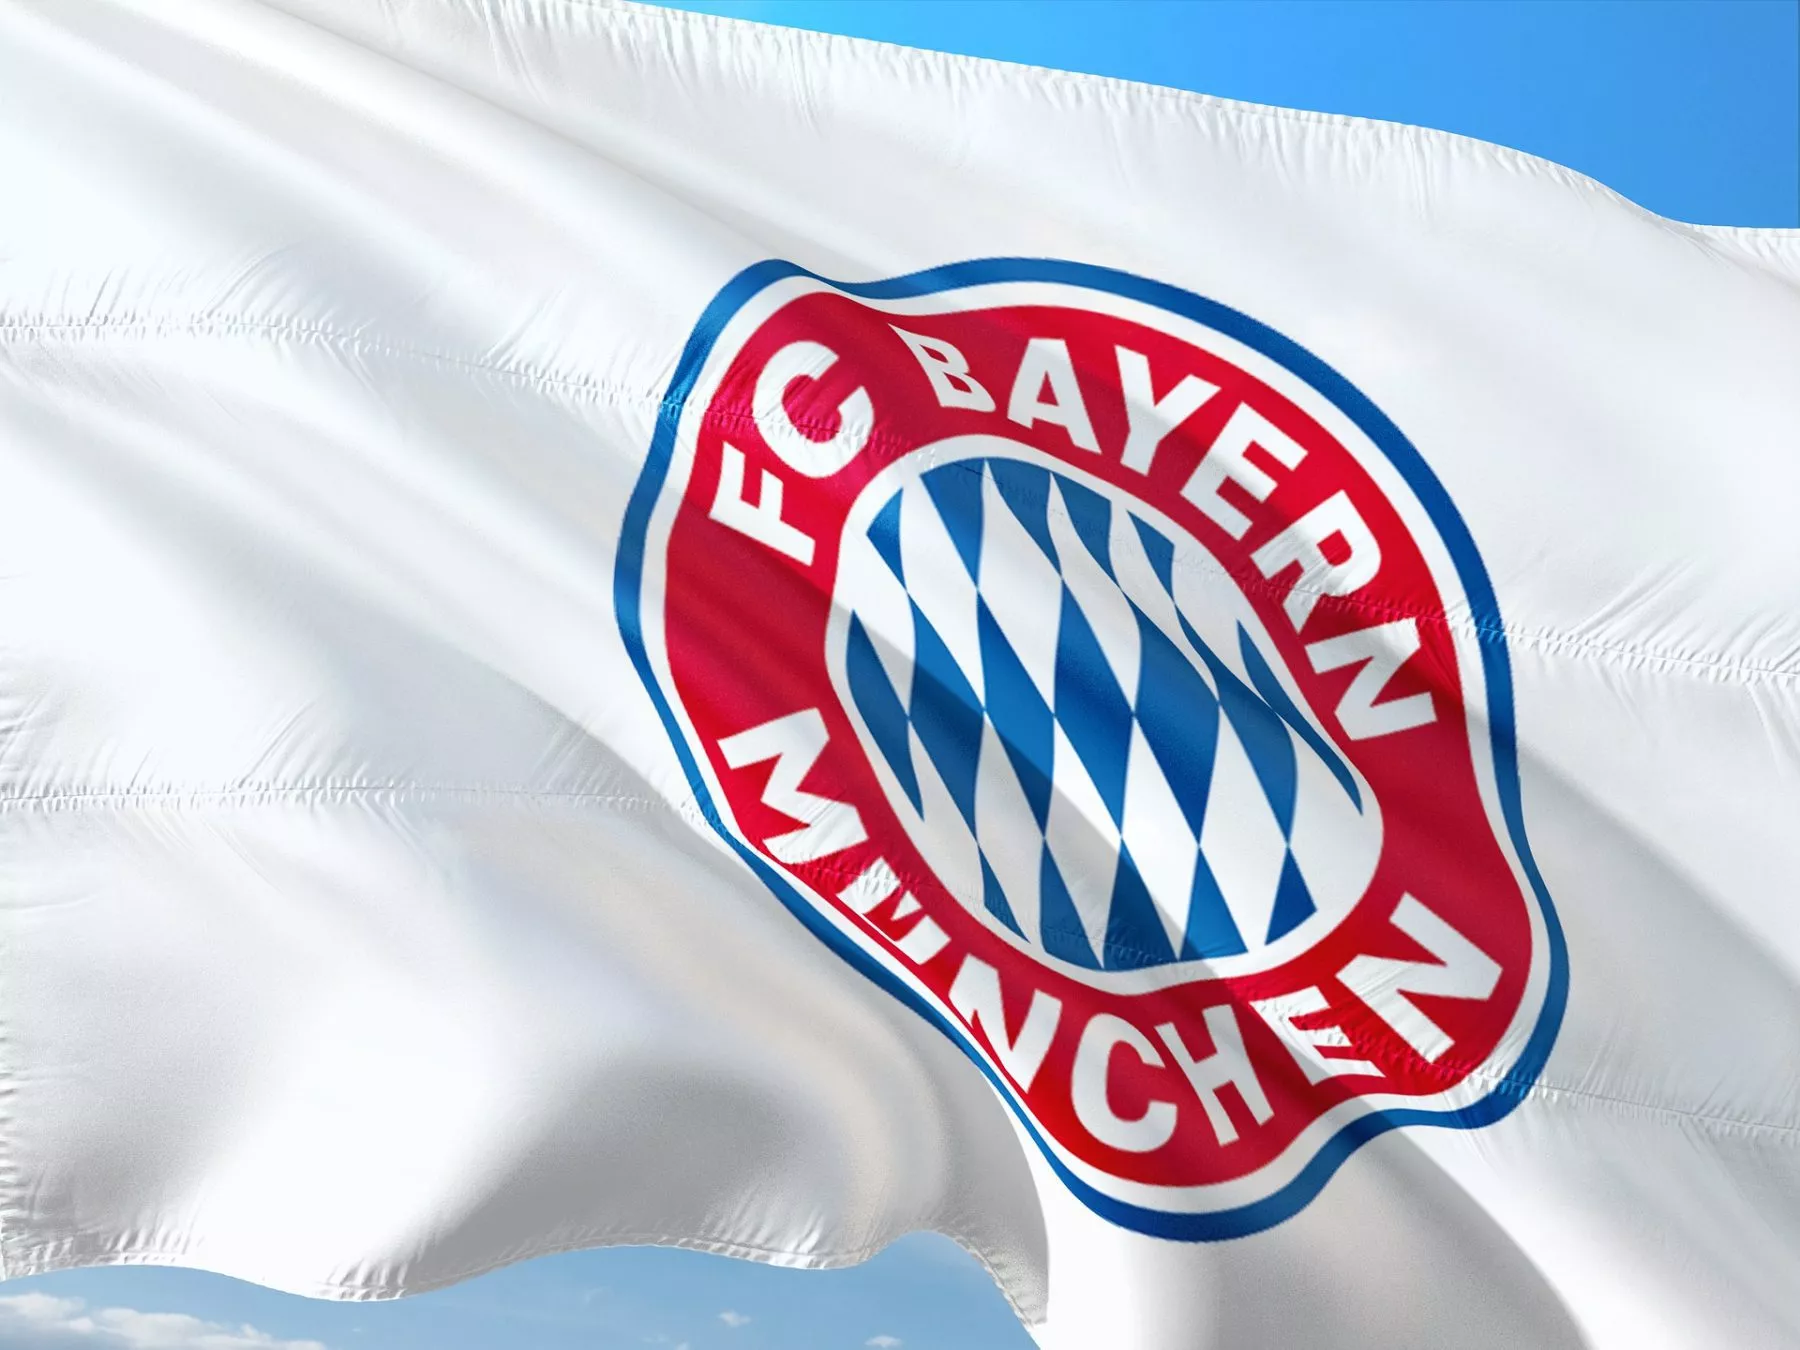 Bayern München heeft digitale token aangekondigd